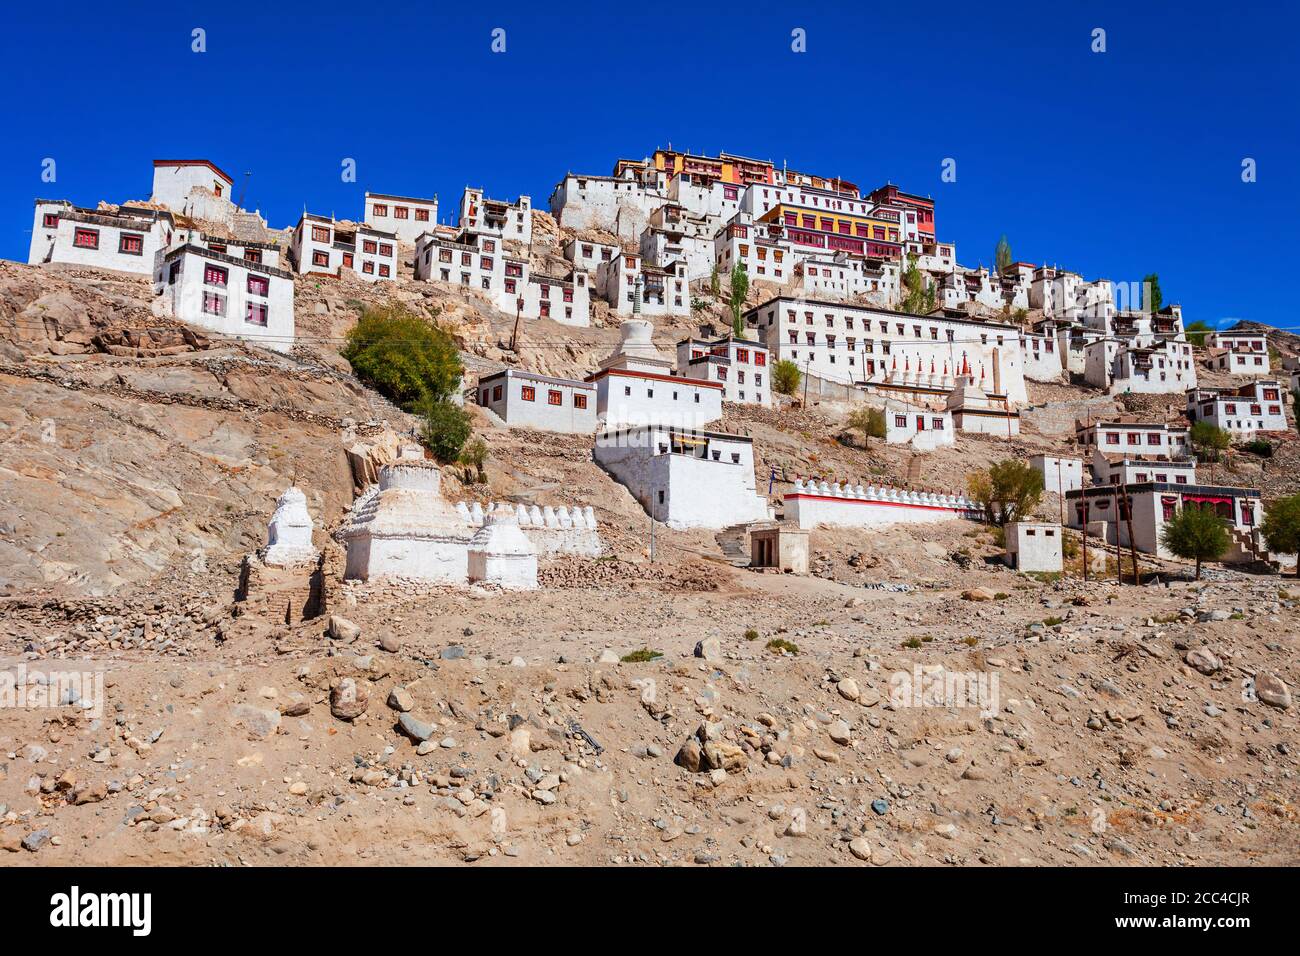 Le monastère Thikse Gompa ou Thiksey est un monastère bouddhiste tibétain à Thiksey, près de Leh, dans le Ladakh, dans le nord de l'Inde Banque D'Images